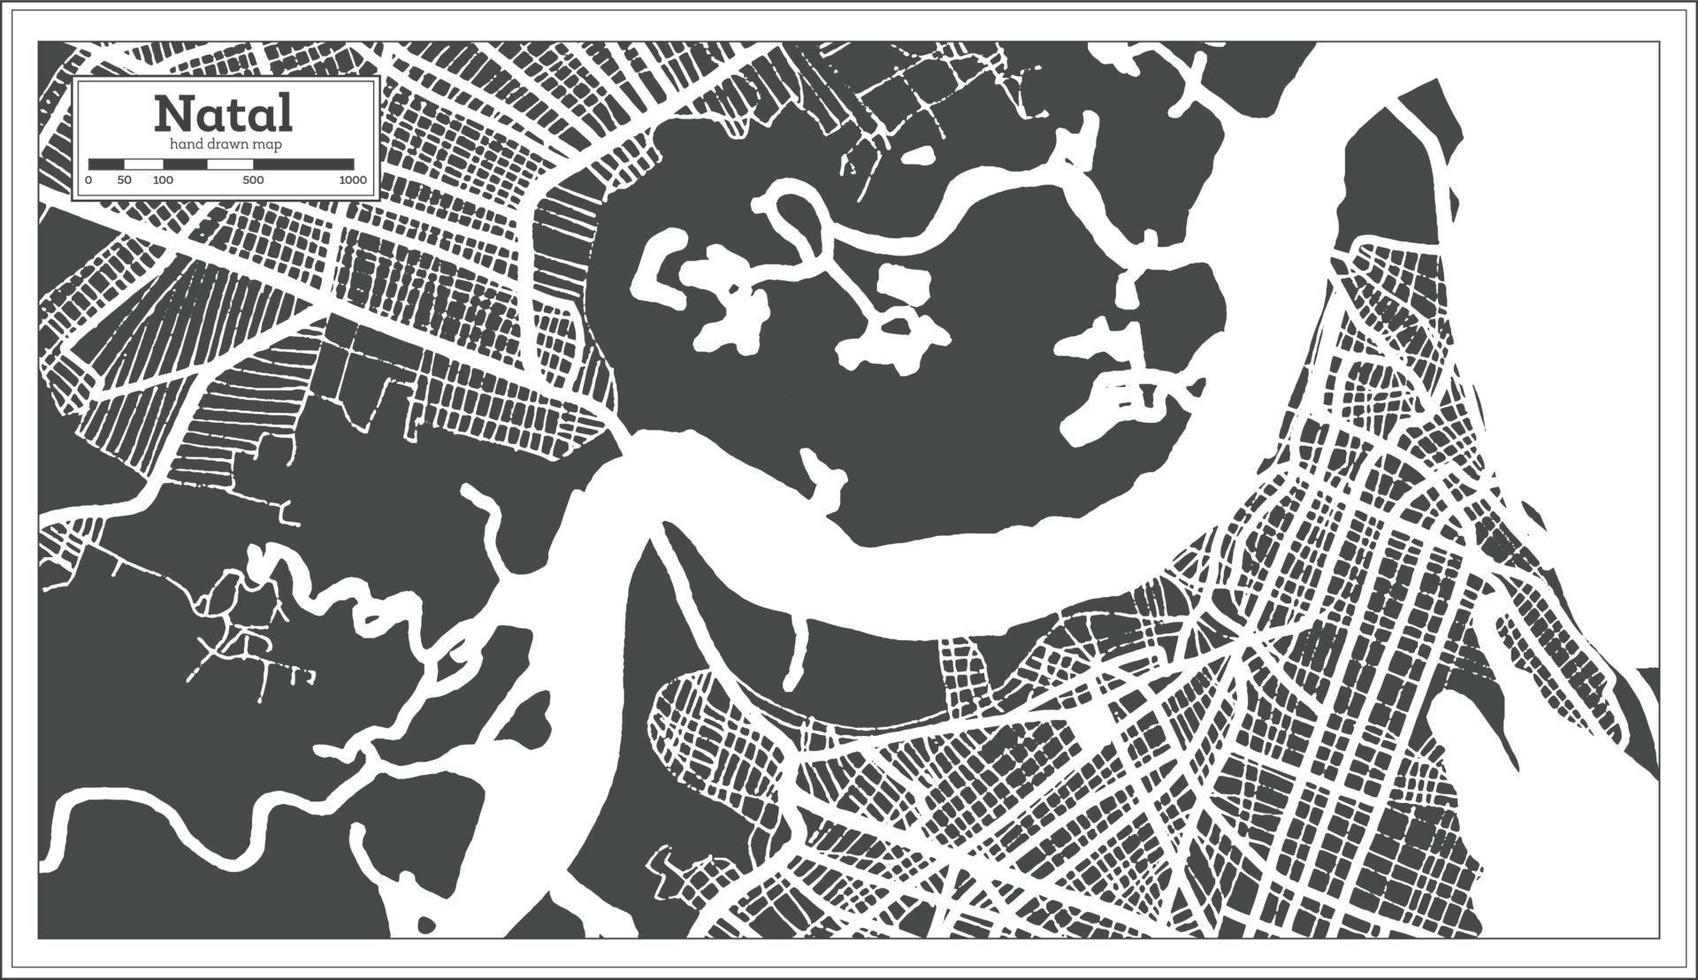 mapa de la ciudad de brasil natal en estilo retro. esquema del mapa. vector